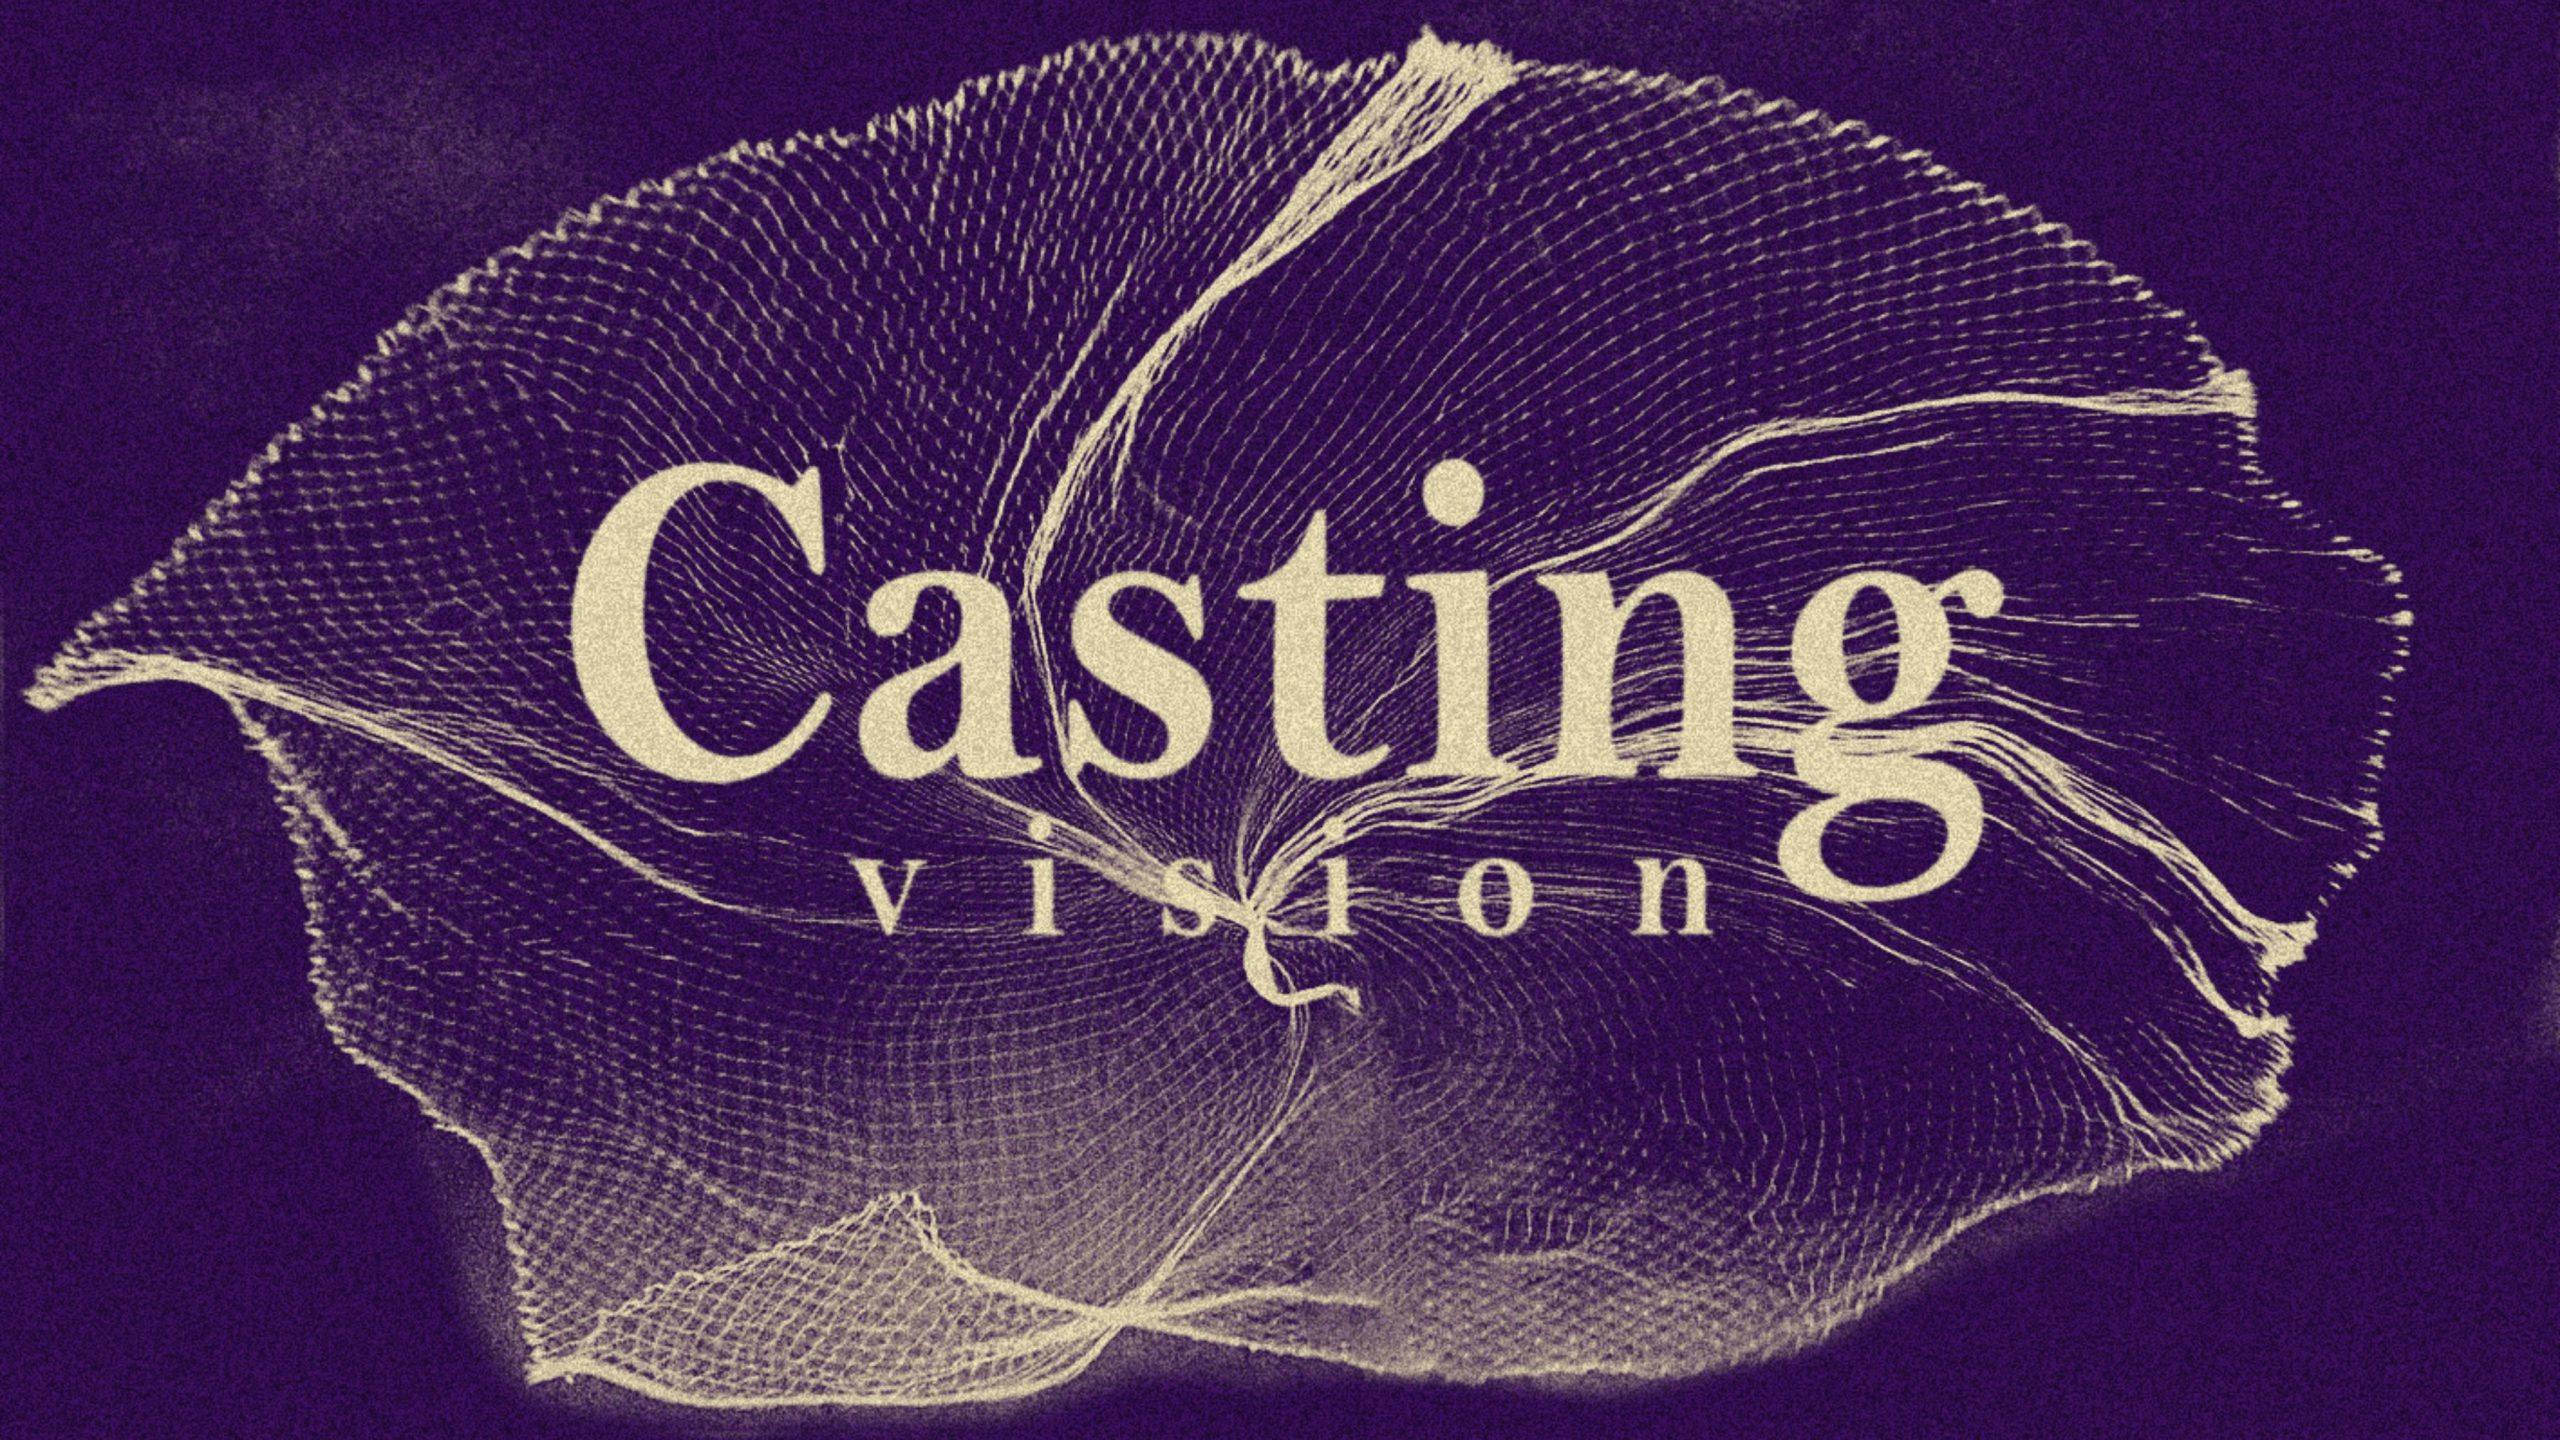 VHG CASTING VISION – PART 3